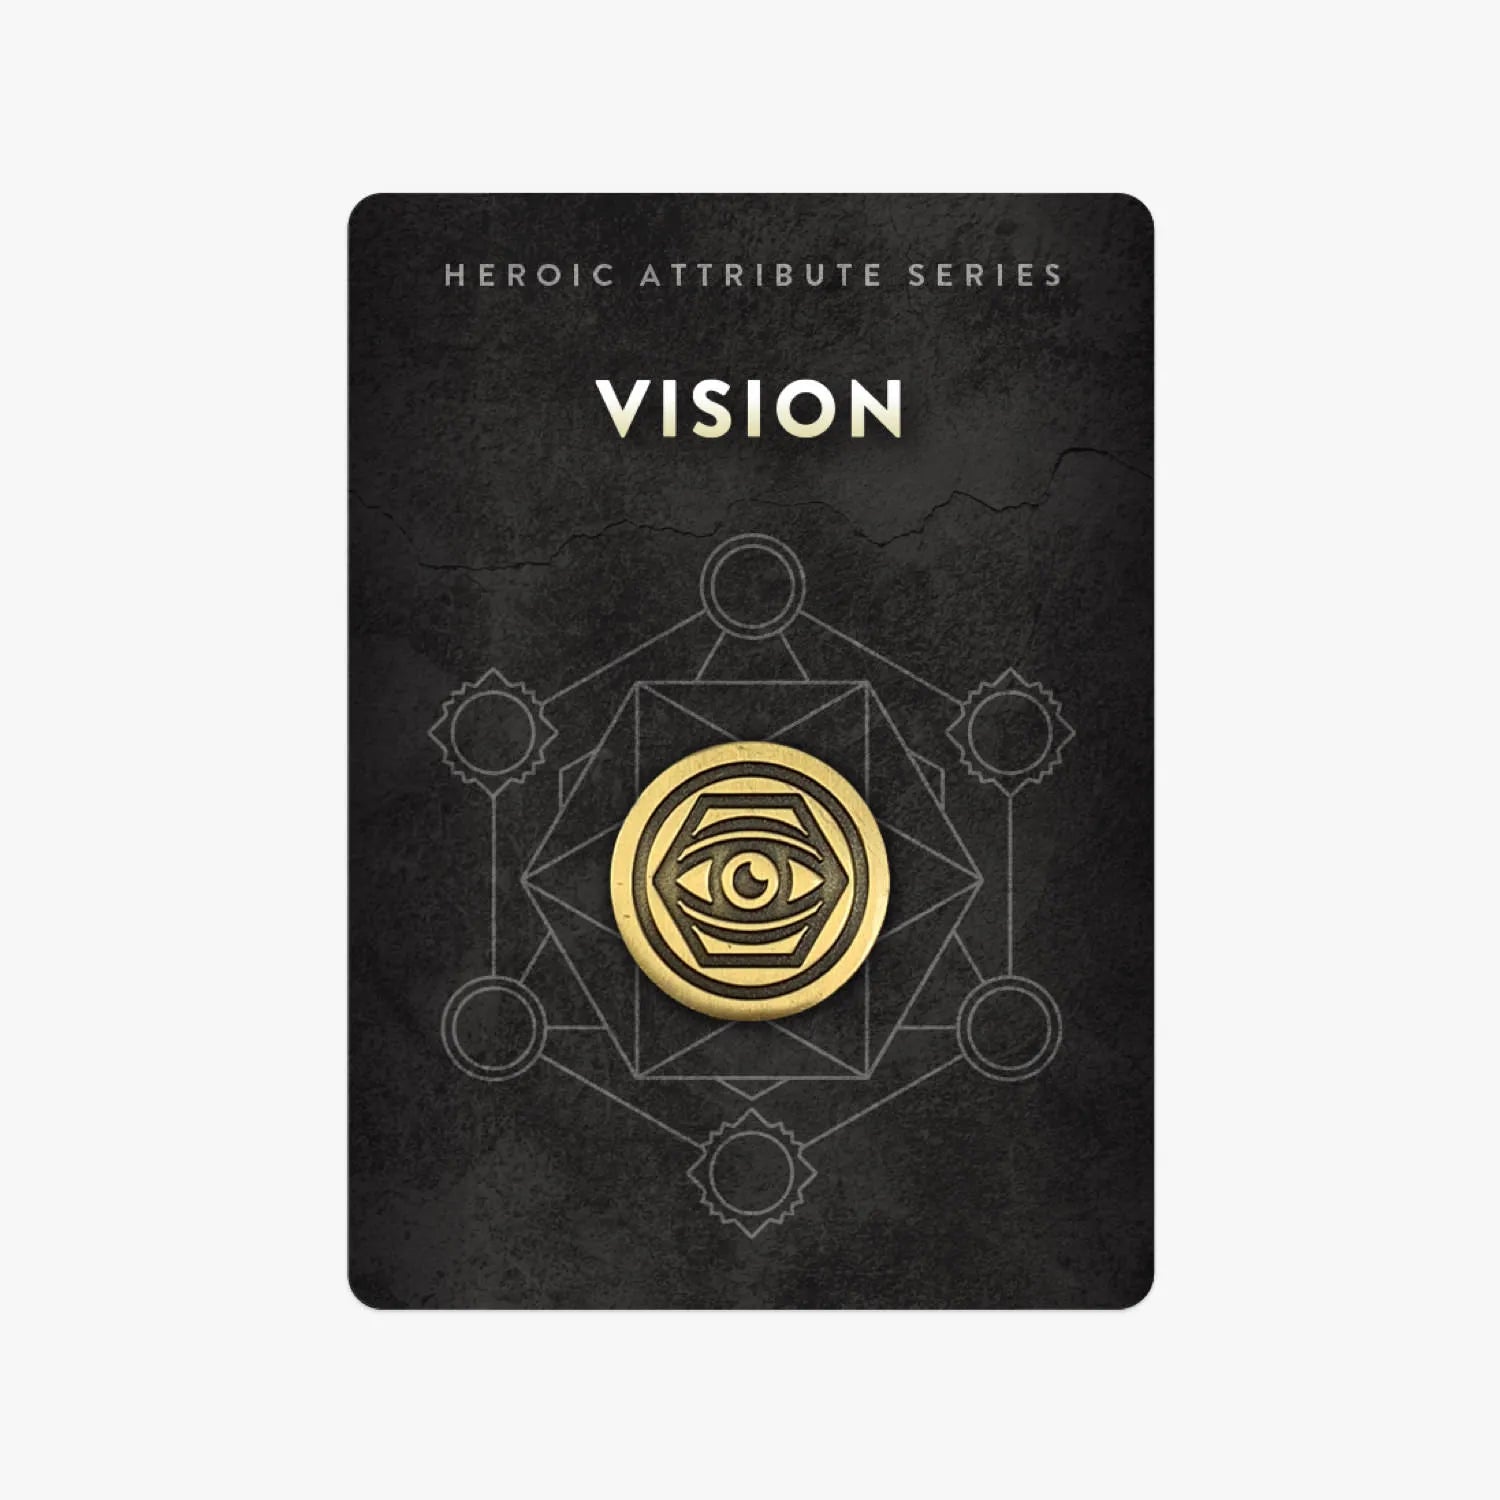 Heroic Attribute Series: Vision Pin